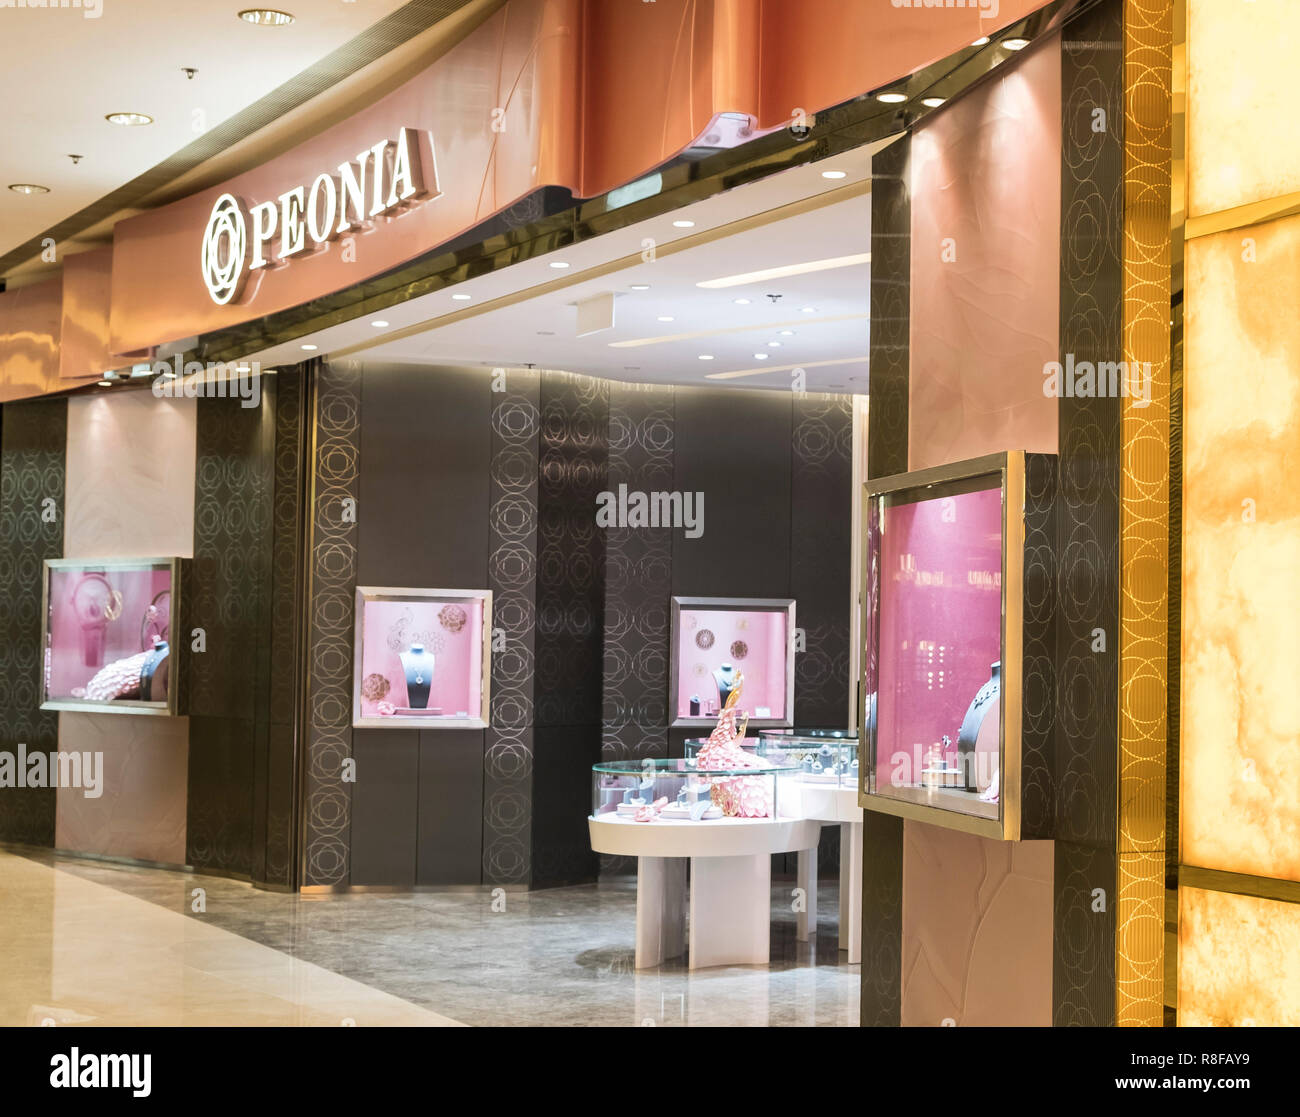 Hong Kong, April 7, 2019: Peonia store in Hong Kong Stock Photo